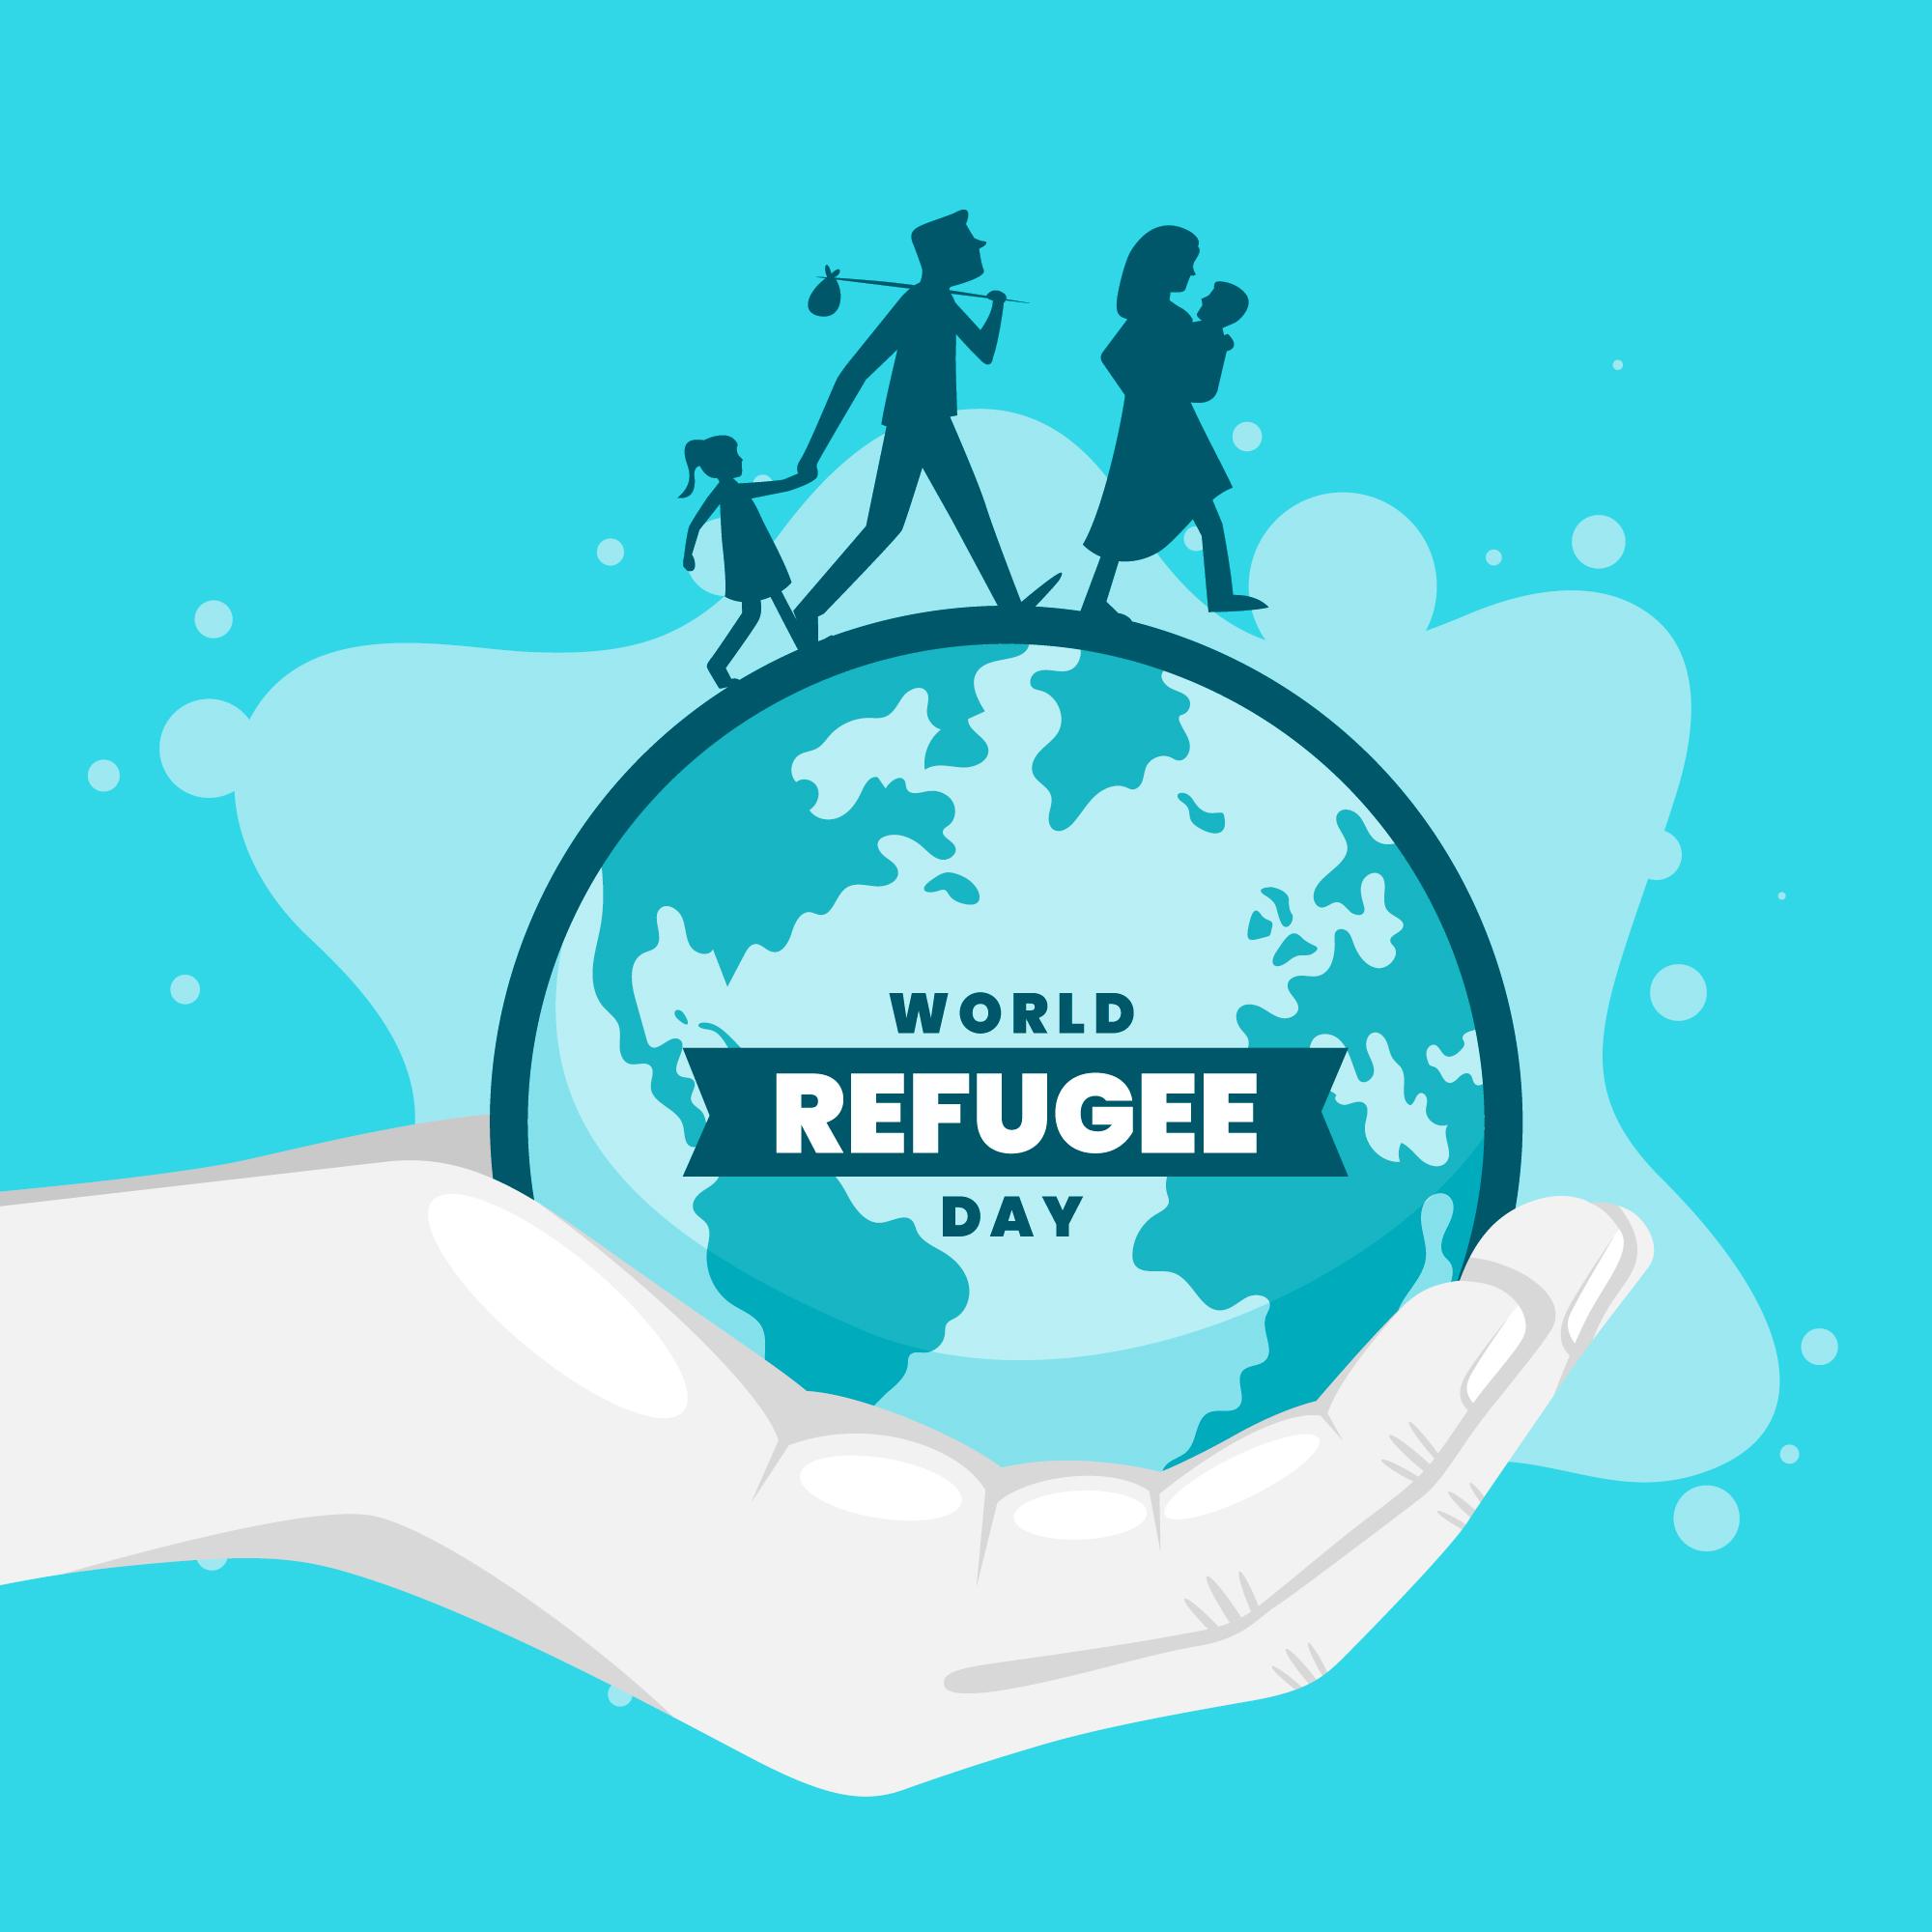 [SON] Journée mondiale des réfugiés - célébration de la persévérance et le courage des personnes contraintes de fuir leur pays d’origine pour diverses raisons